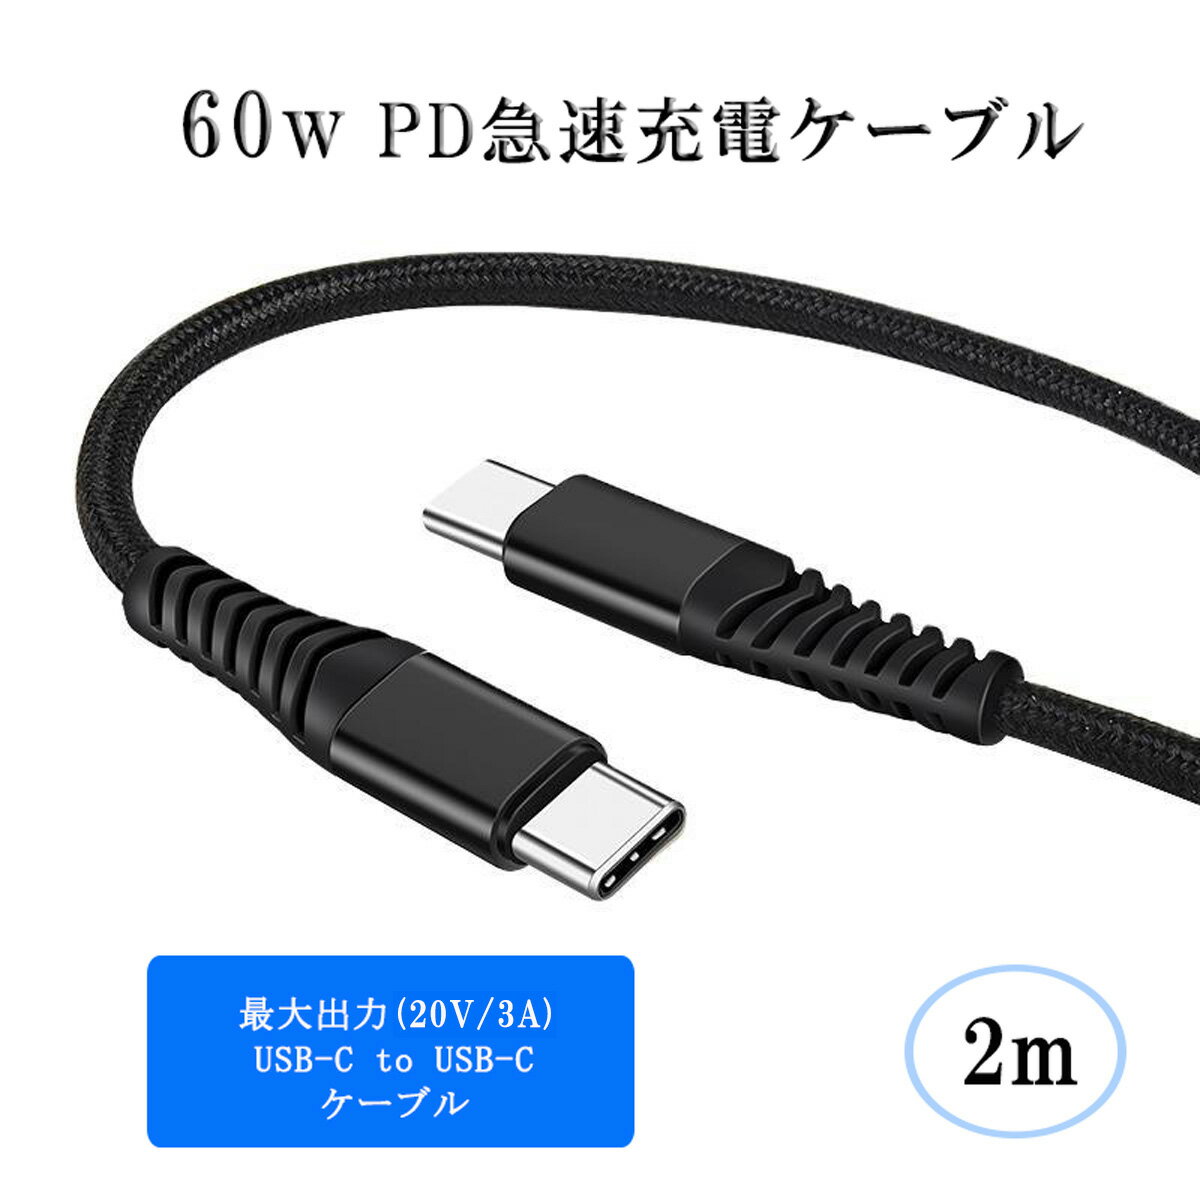 60W USB Type C-Type C 充電ケーブル 2m 20V/3A PD 急速充電 タイプC USB-C Galaxy/Xperia/Macbook /iPad Pro /Nintendo Switch 高耐久 ナイロン編み ケーブル